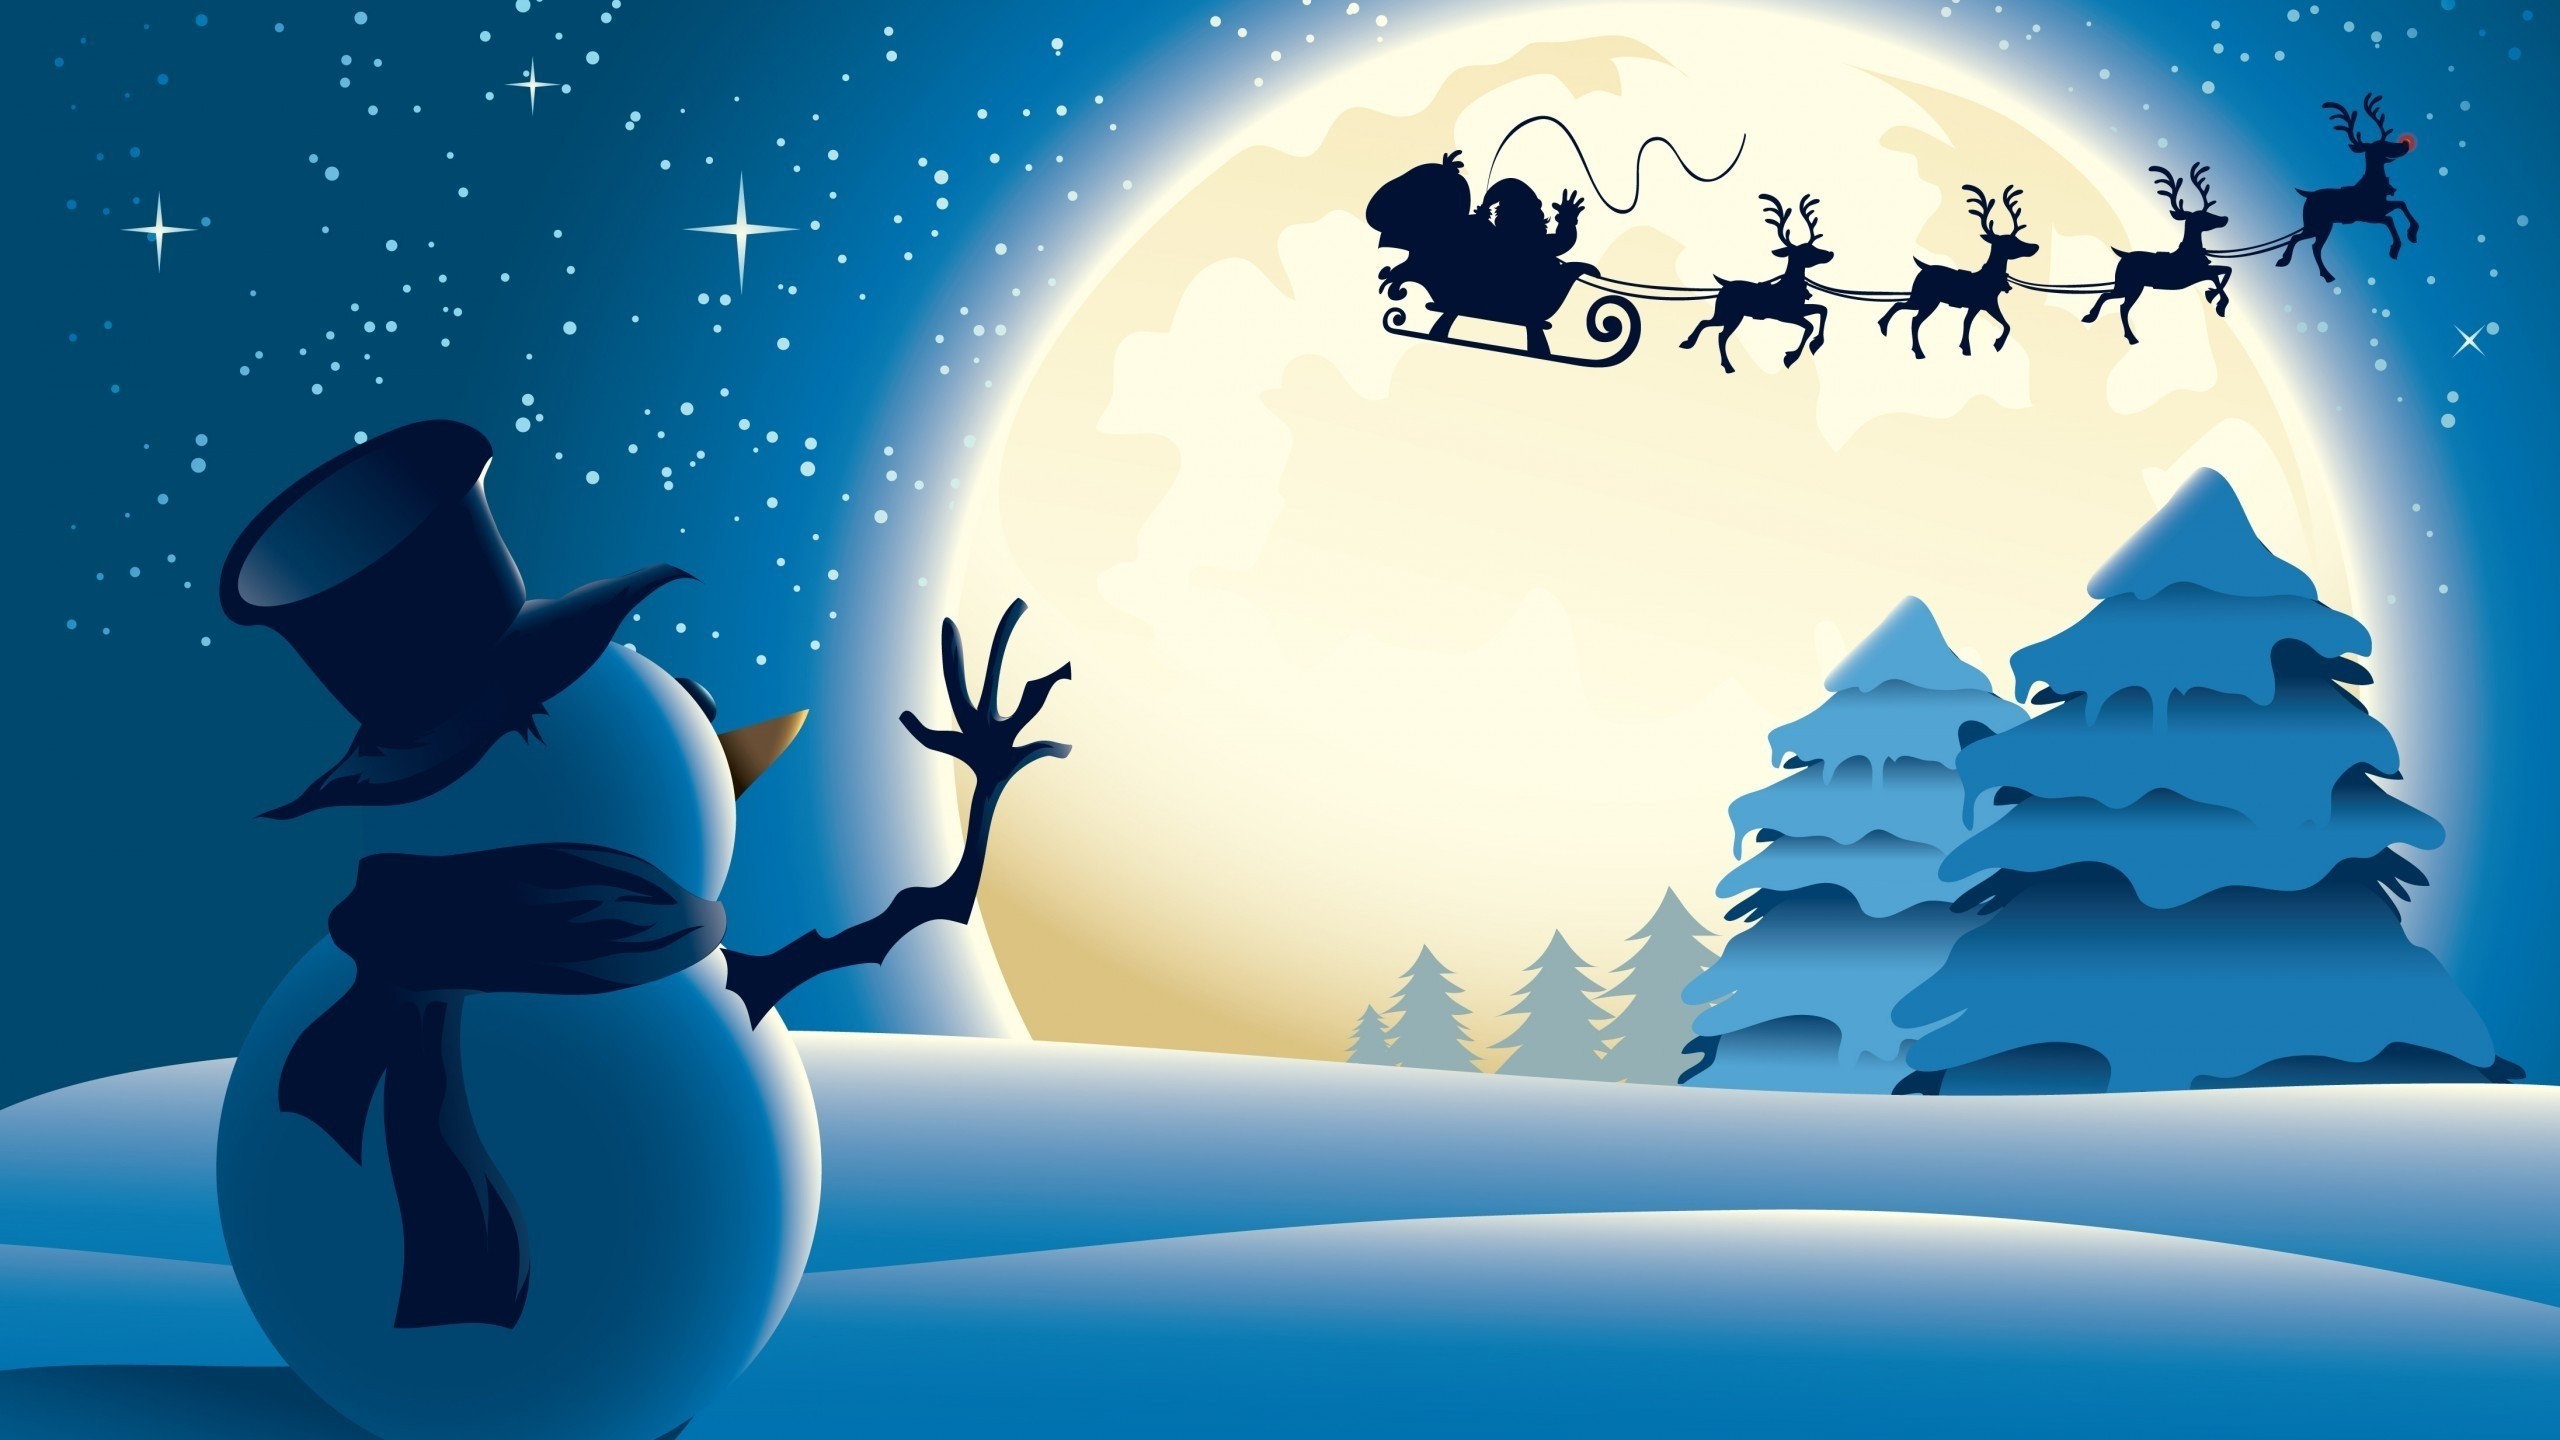 2560x1440 snowman waving to Santa moonlight flight Christmas wallpaper